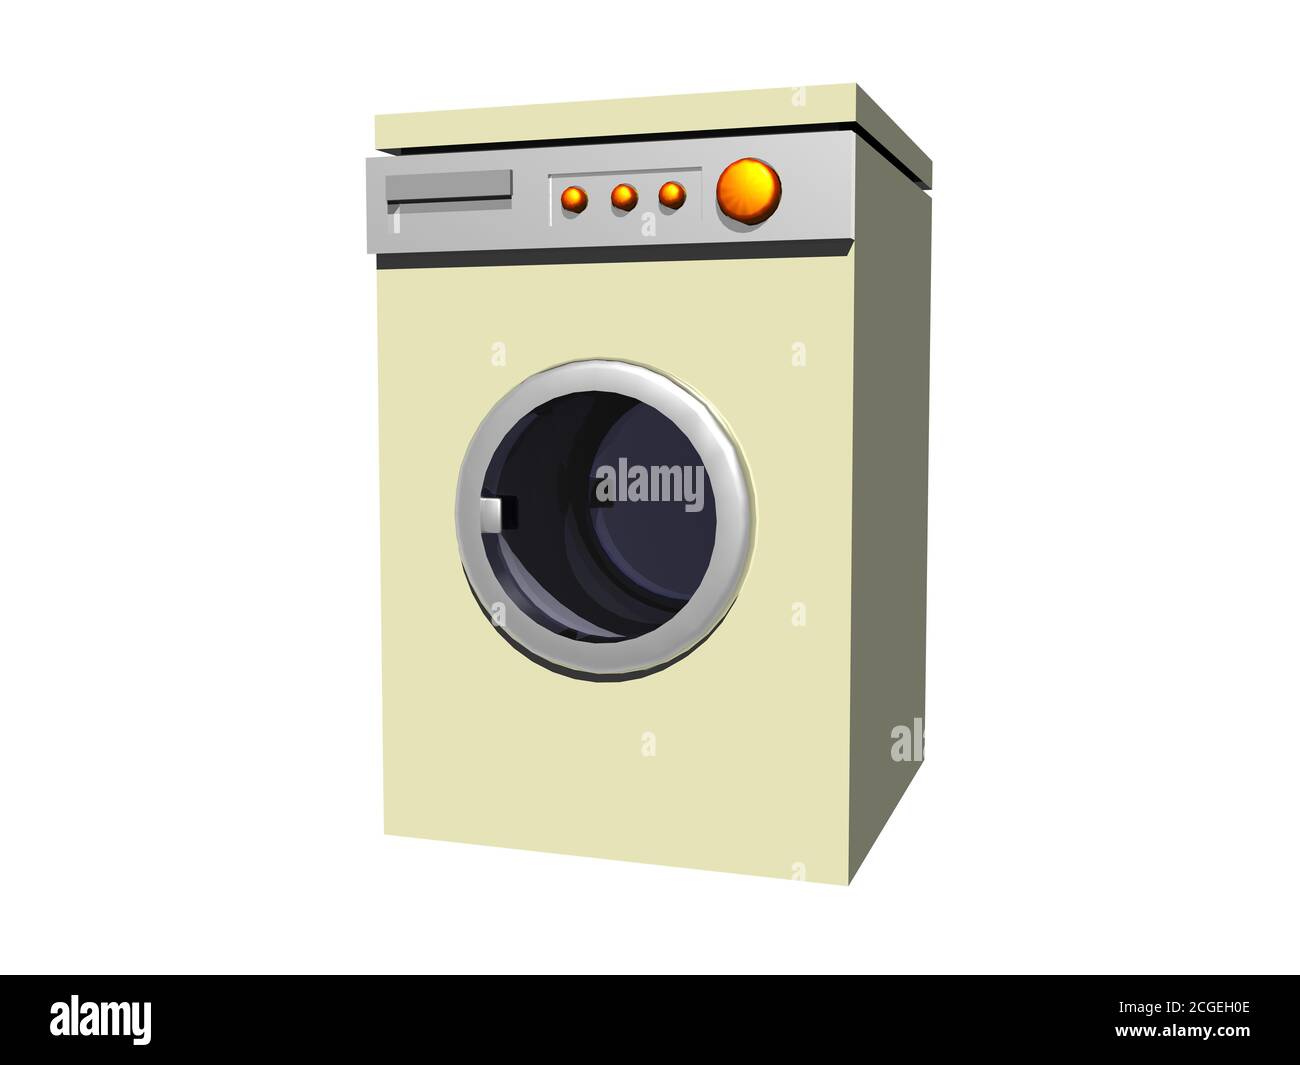 Wasch machine Stock Photo